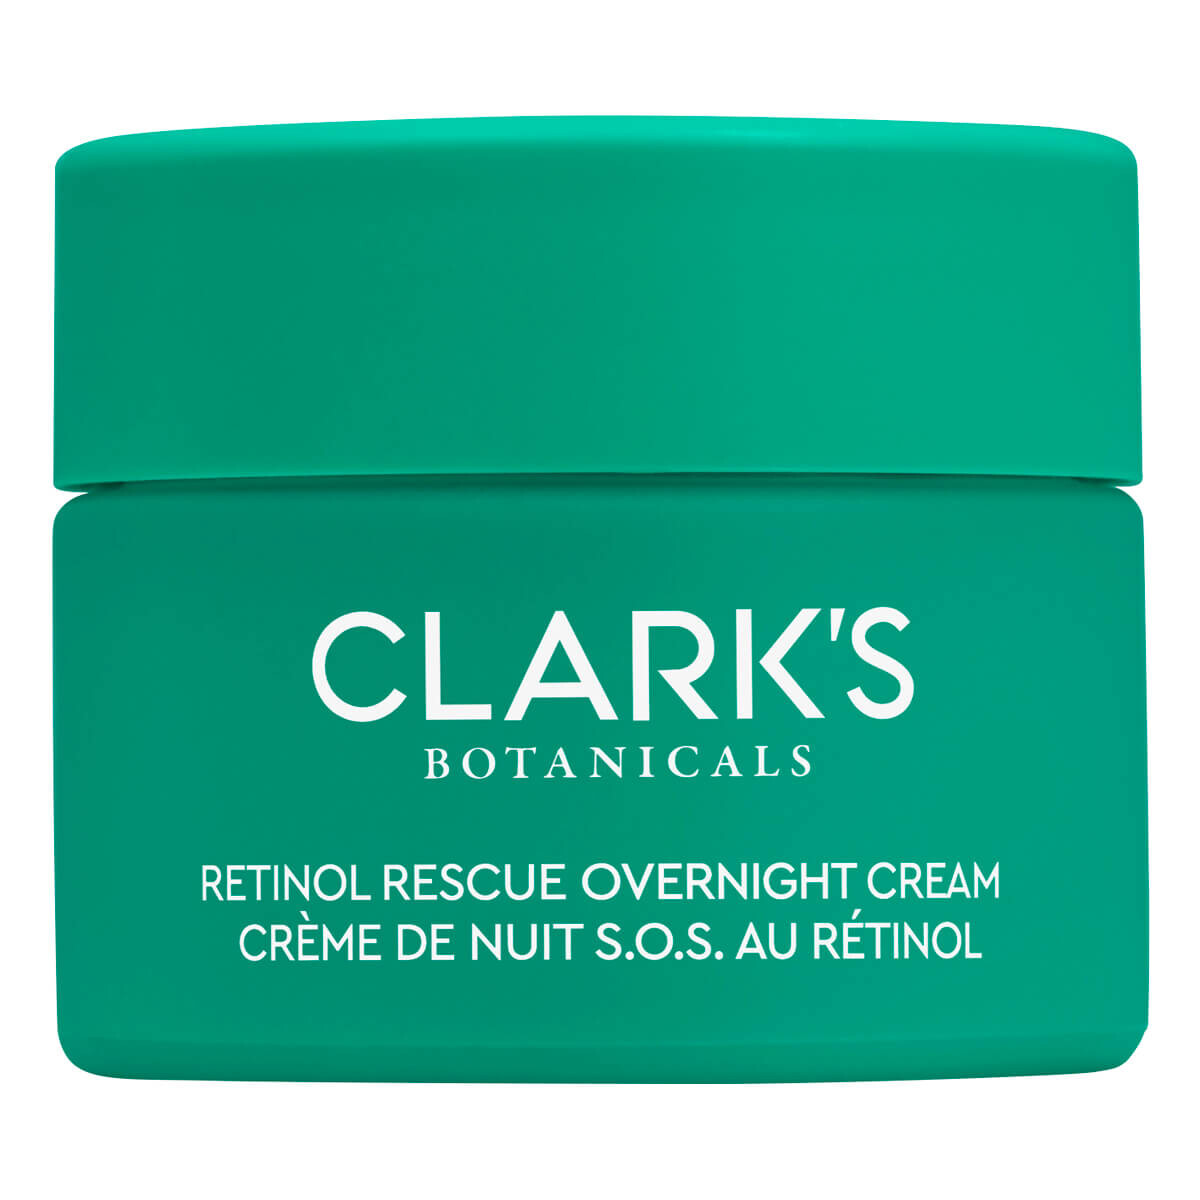 Clark's Botanicals Retinol Rescue Overnight Cream, 50 ml.